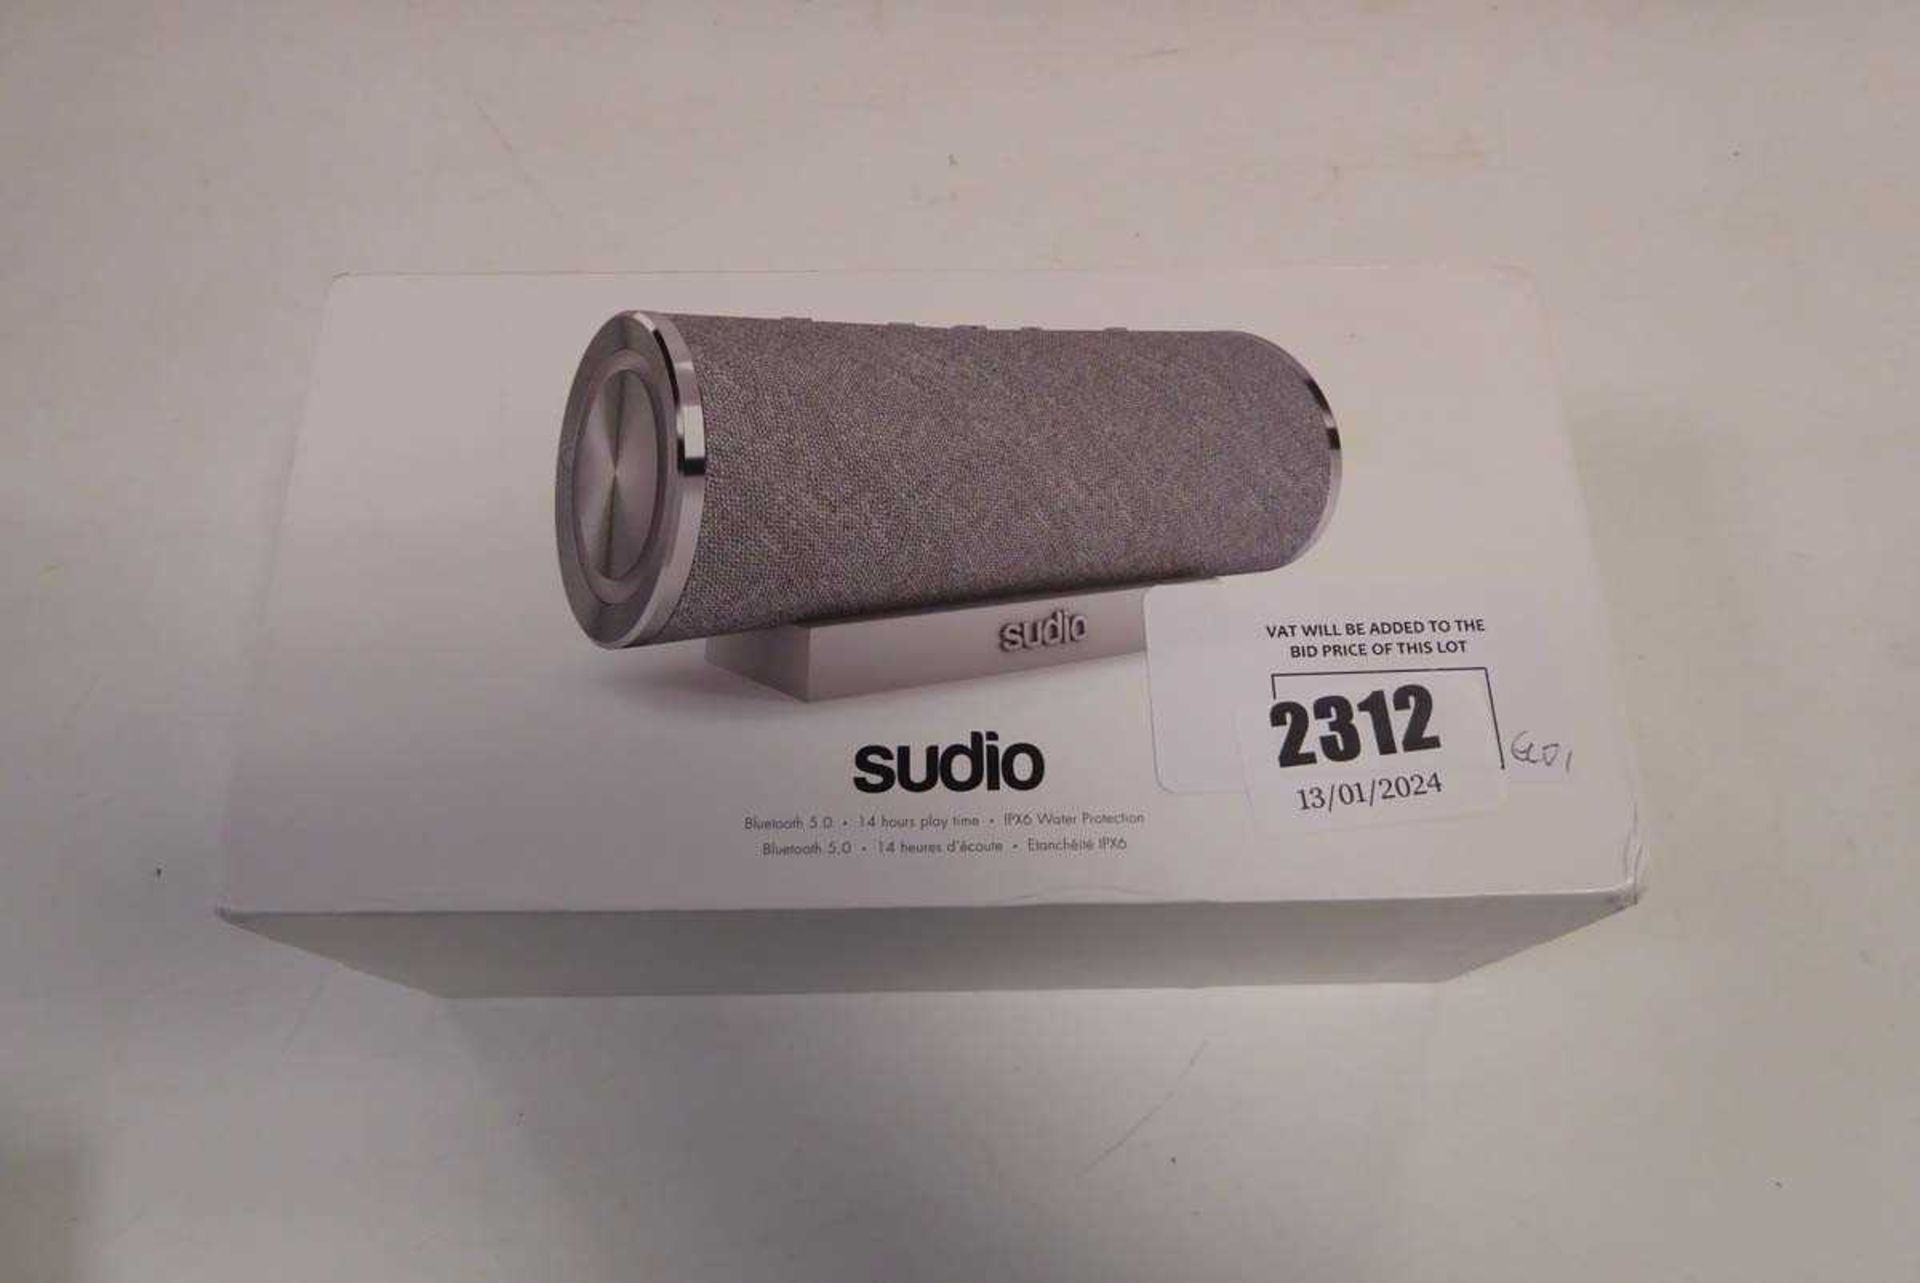 +VAT Boxed Sudio bluetooth speaker